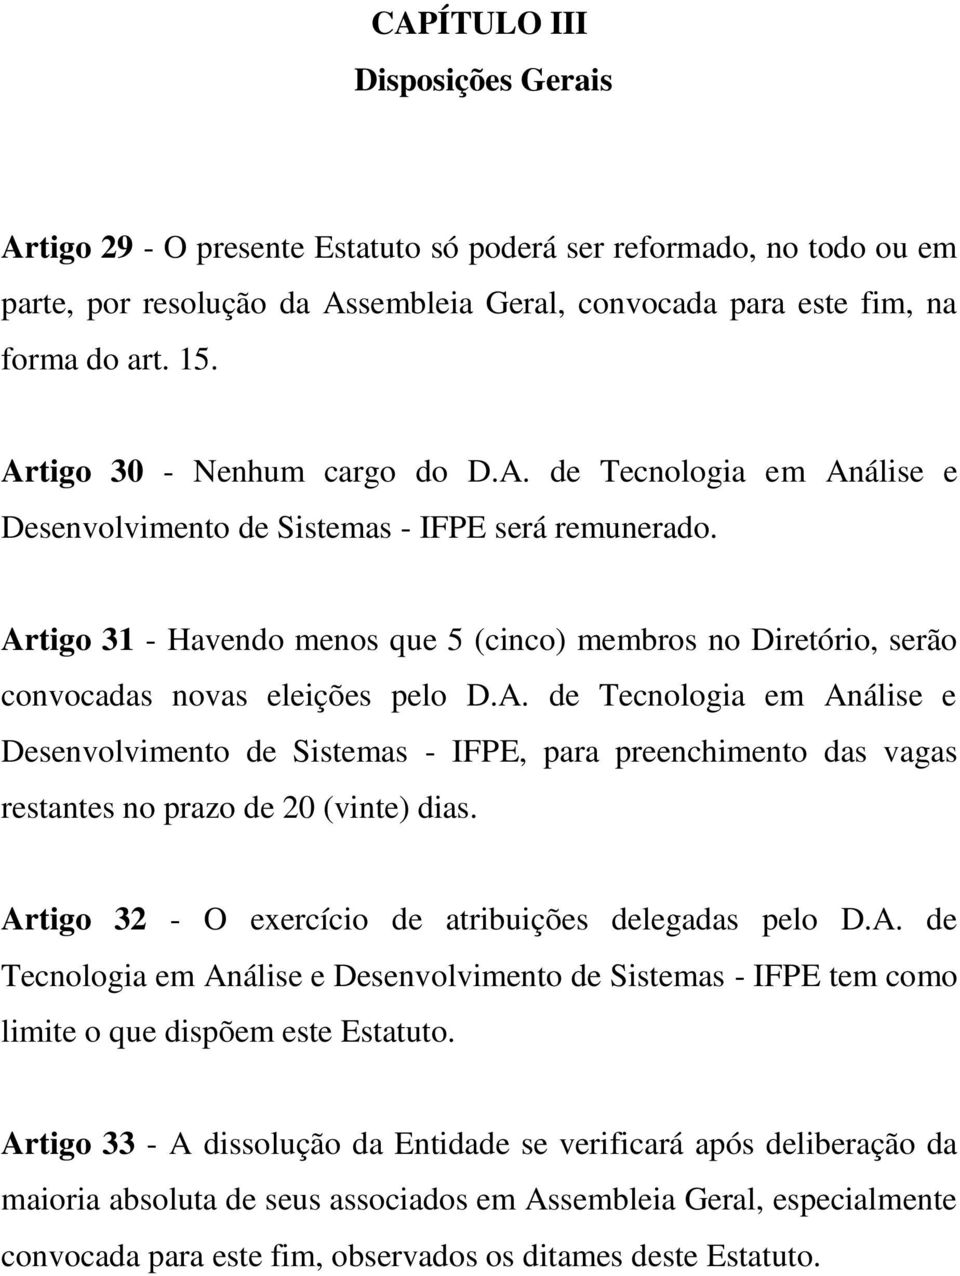 Artigo 31 - Havendo menos que 5 (cinco) membros no Diretório, serão convocadas novas eleições pelo D.A. de Tecnologia em Análise e Desenvolvimento de Sistemas - IFPE, para preenchimento das vagas restantes no prazo de 20 (vinte) dias.